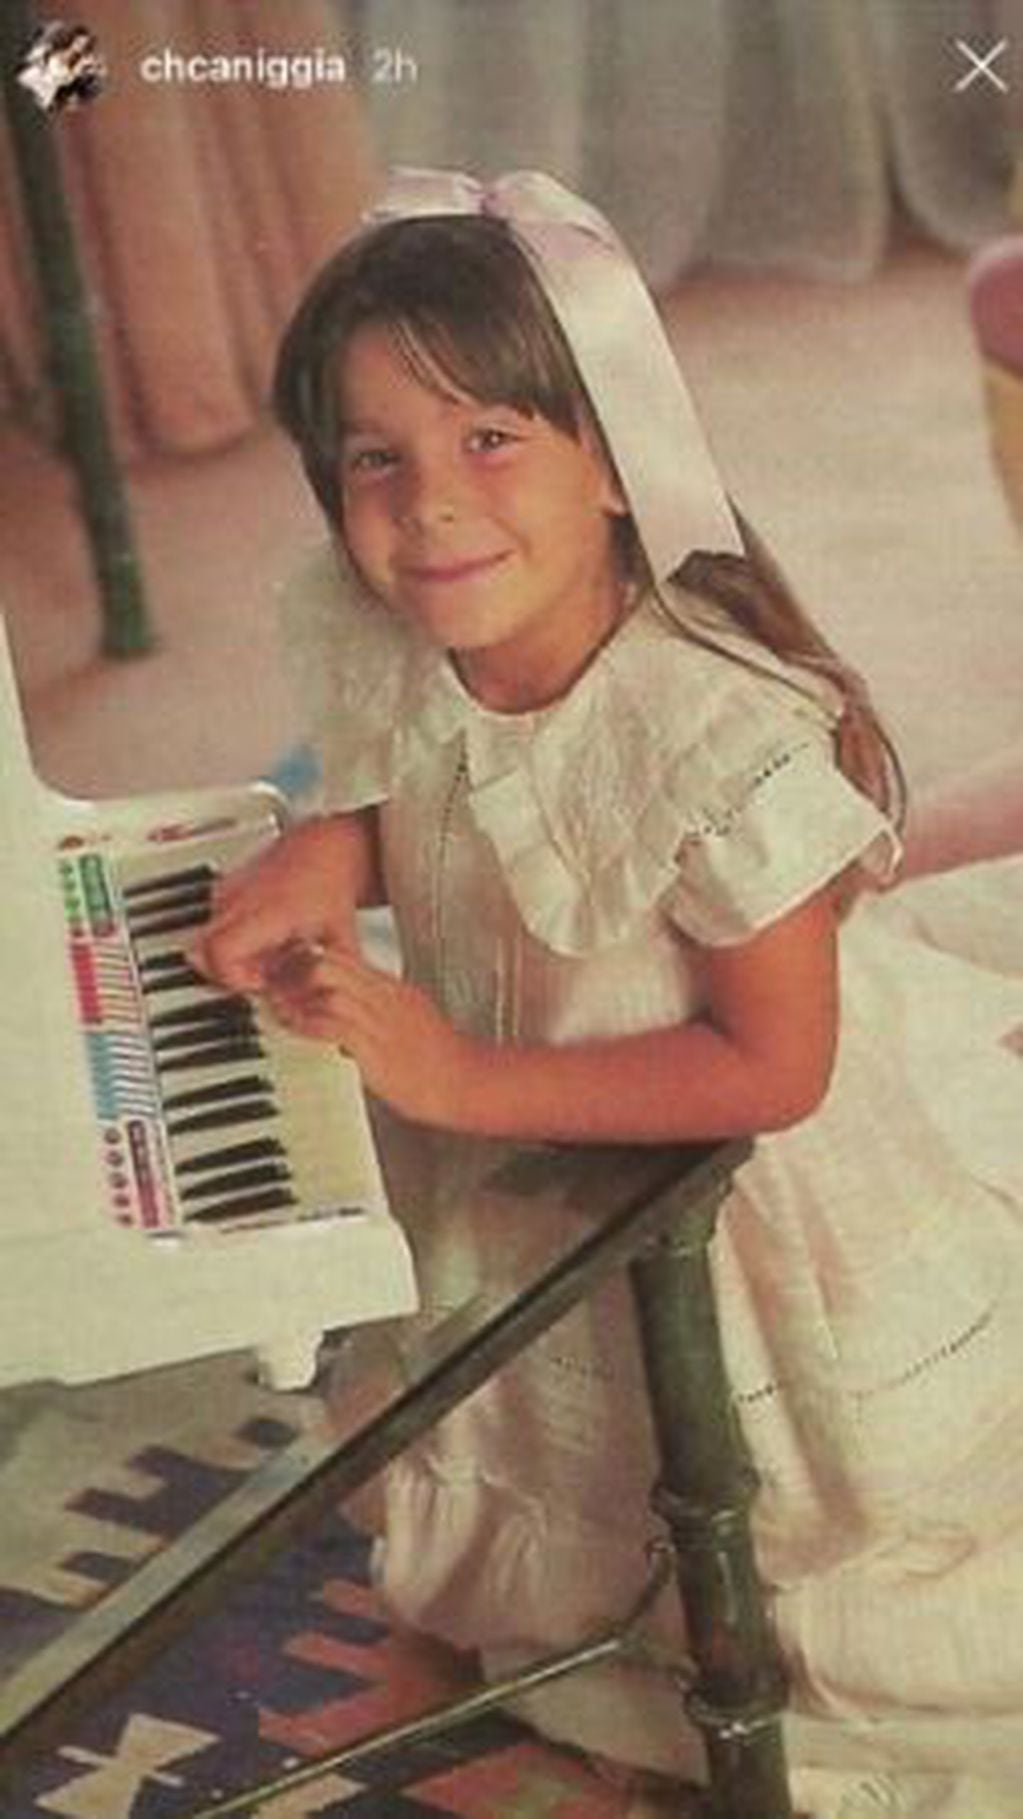 En la postal, Charlotte aparece tocando el piano cuando era pequeña. (Instagram/chcaniggia)